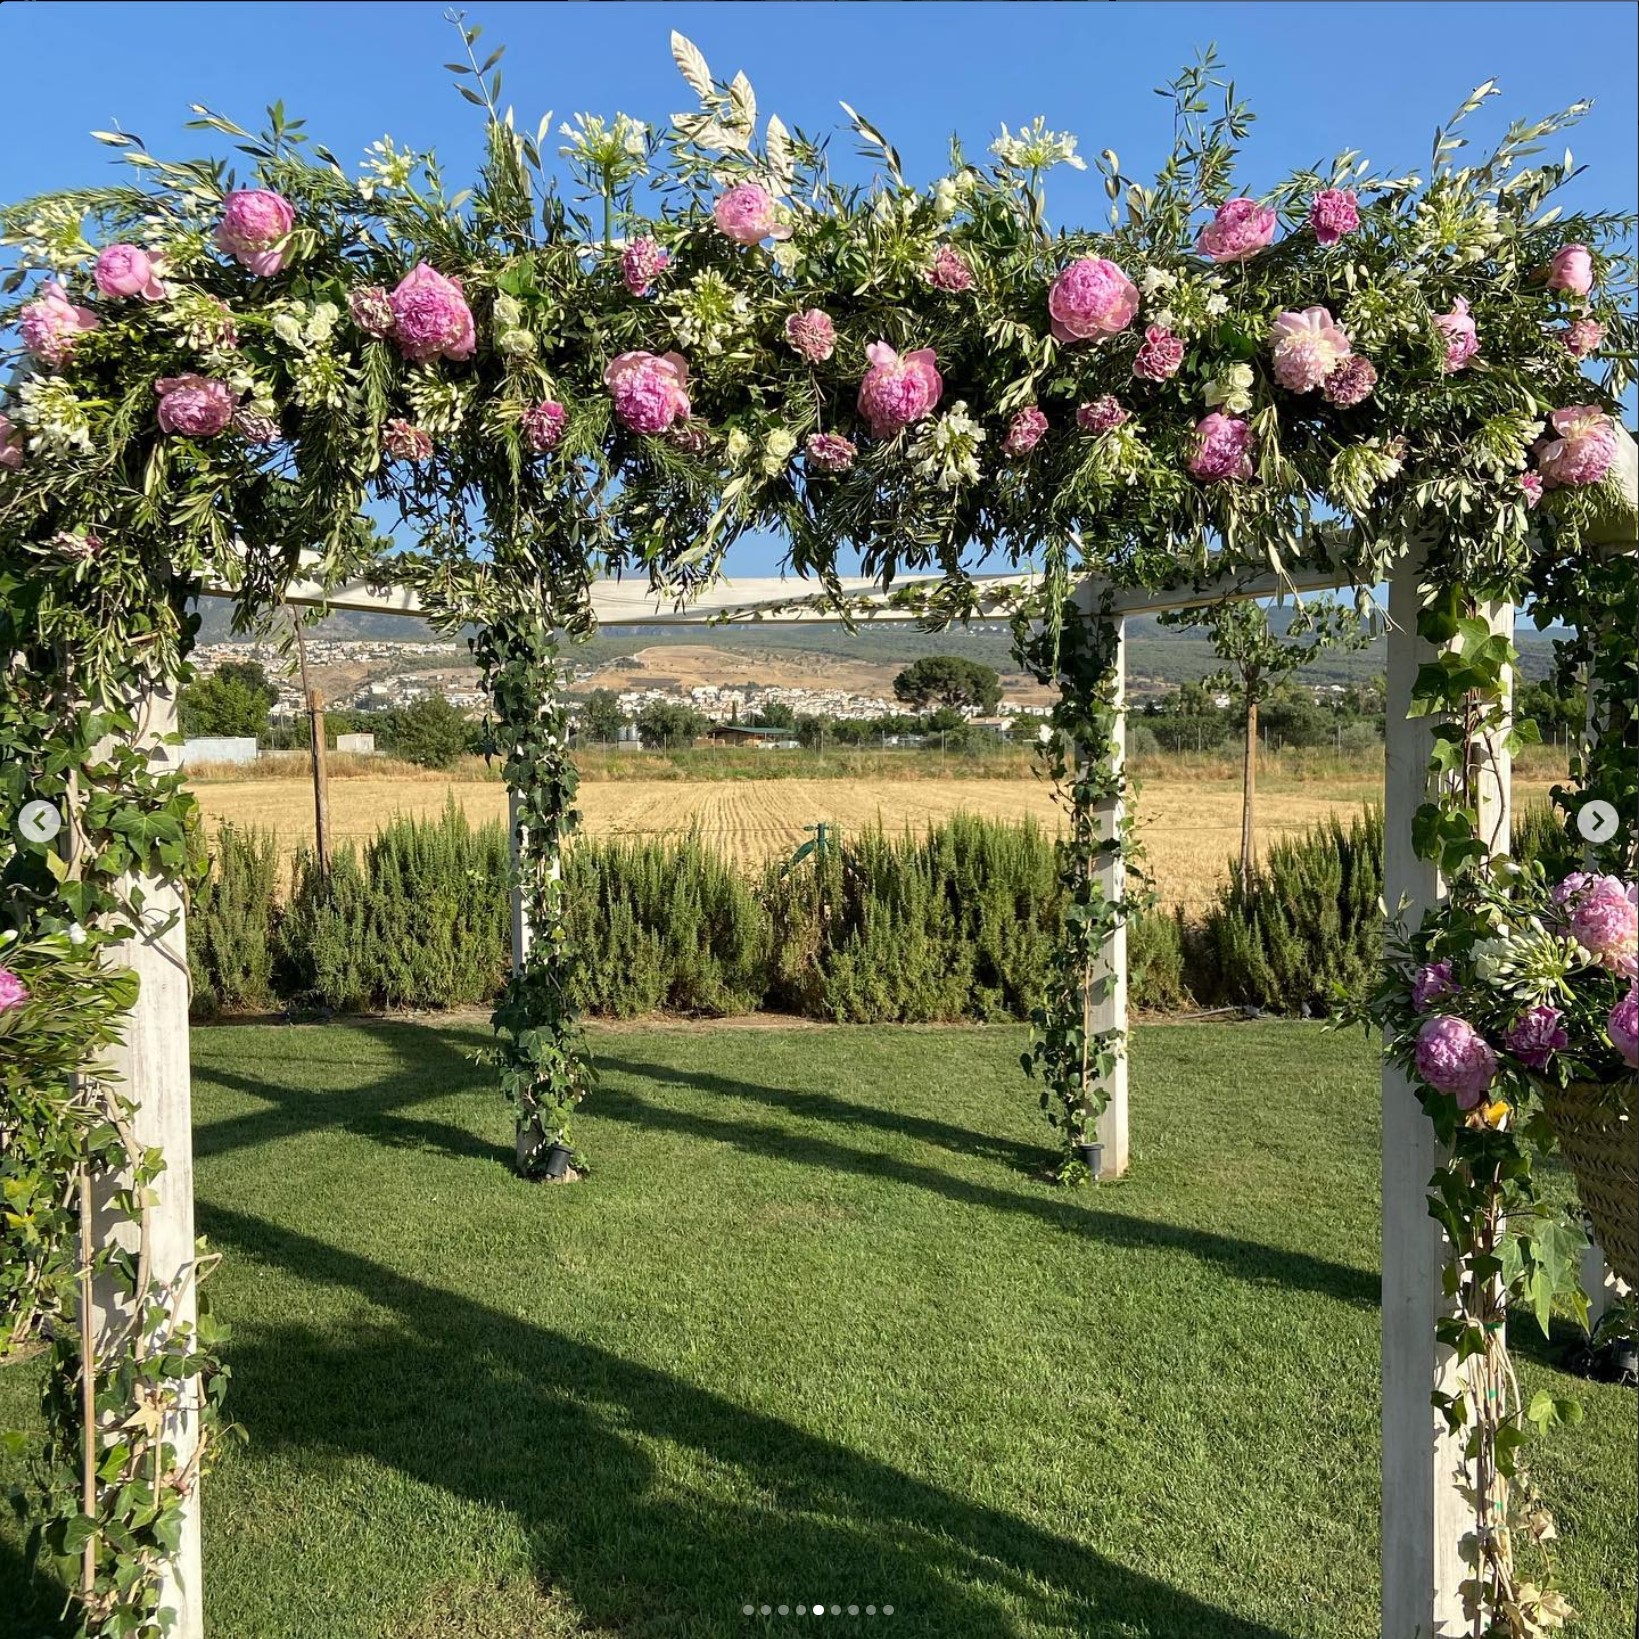 Arco floral para boda